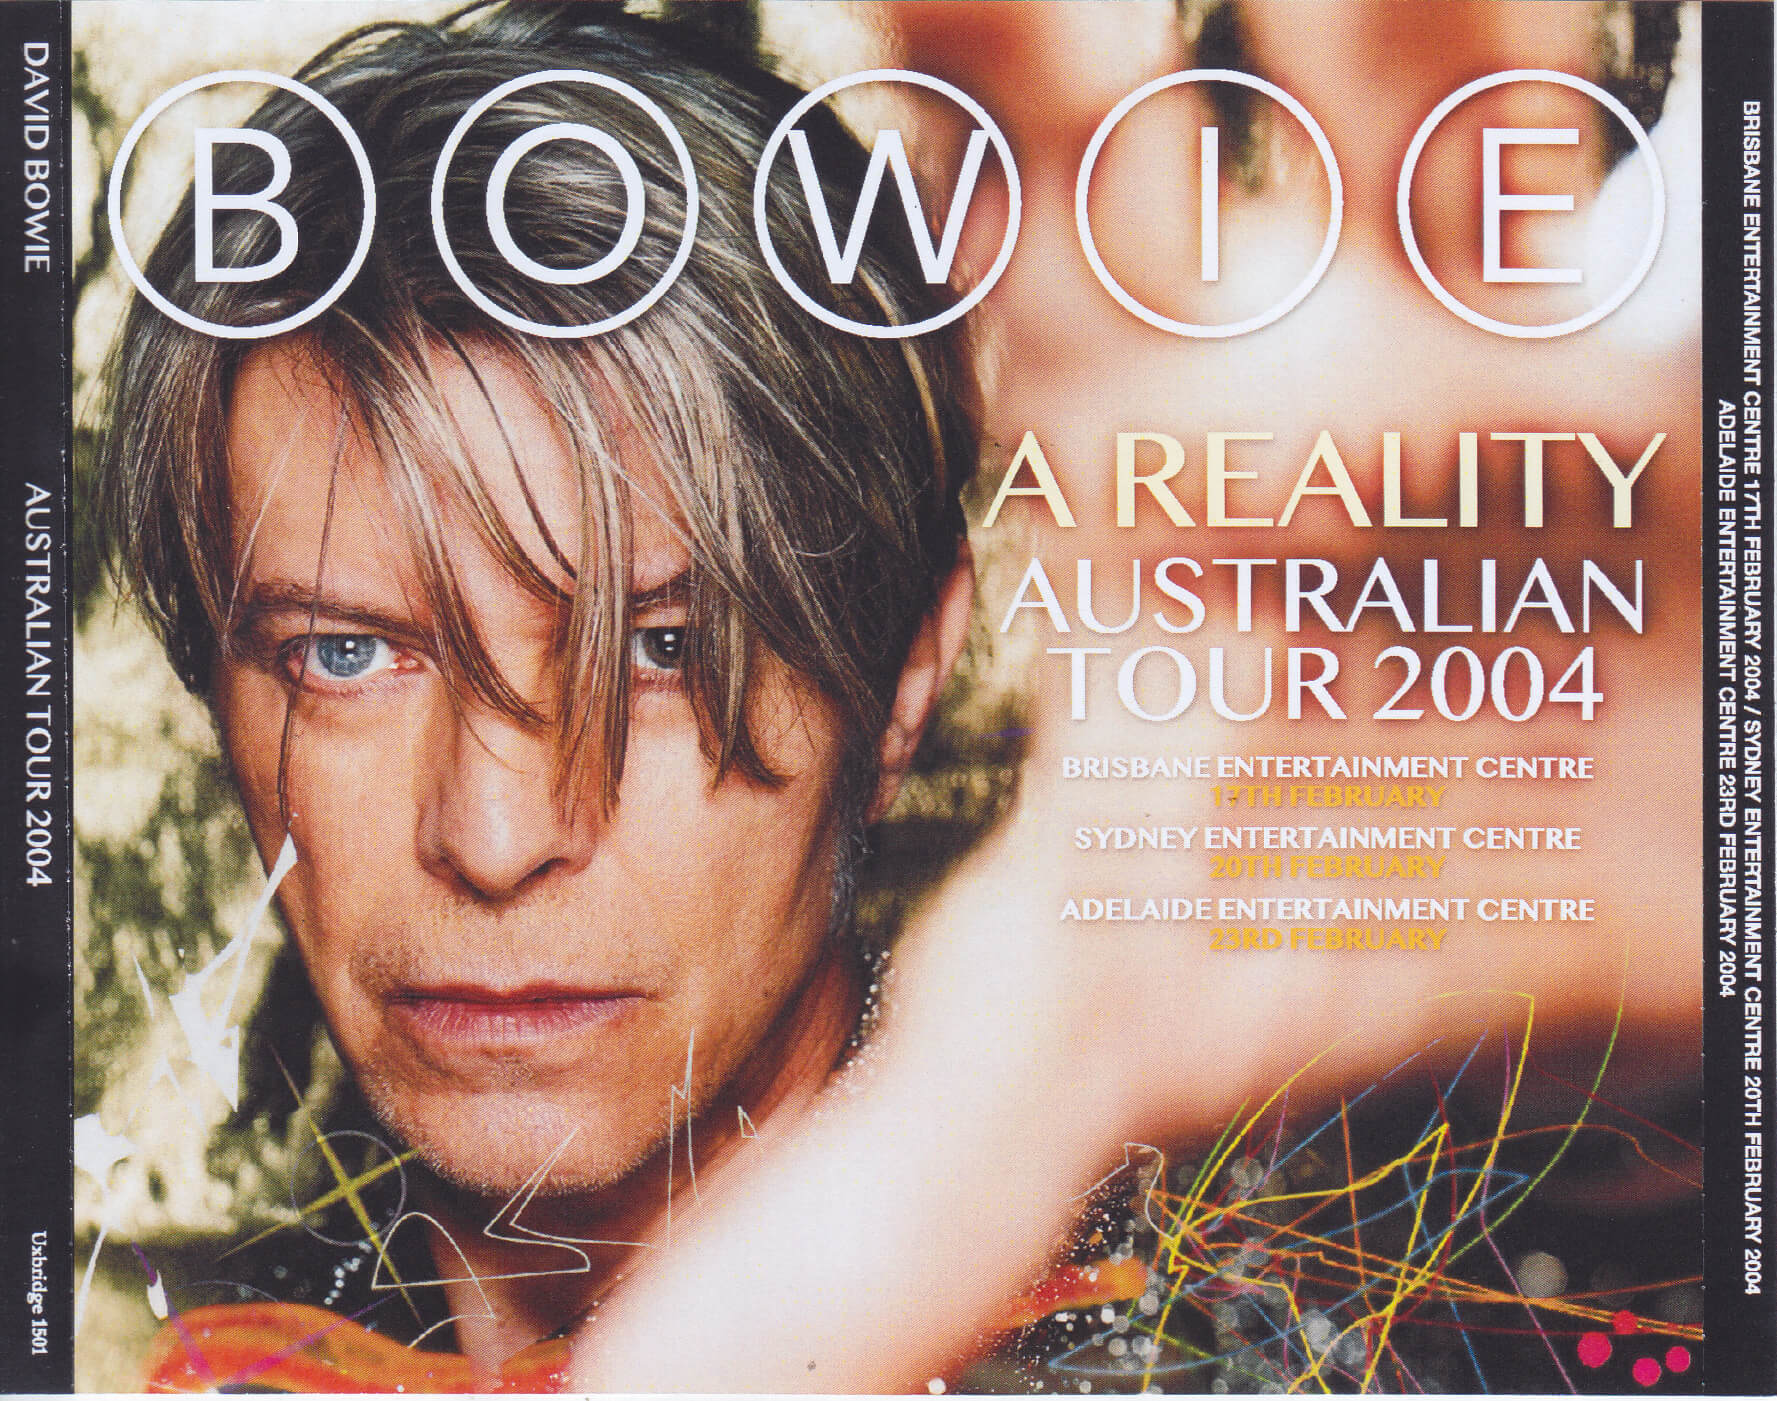 david bowie tour dates 2004